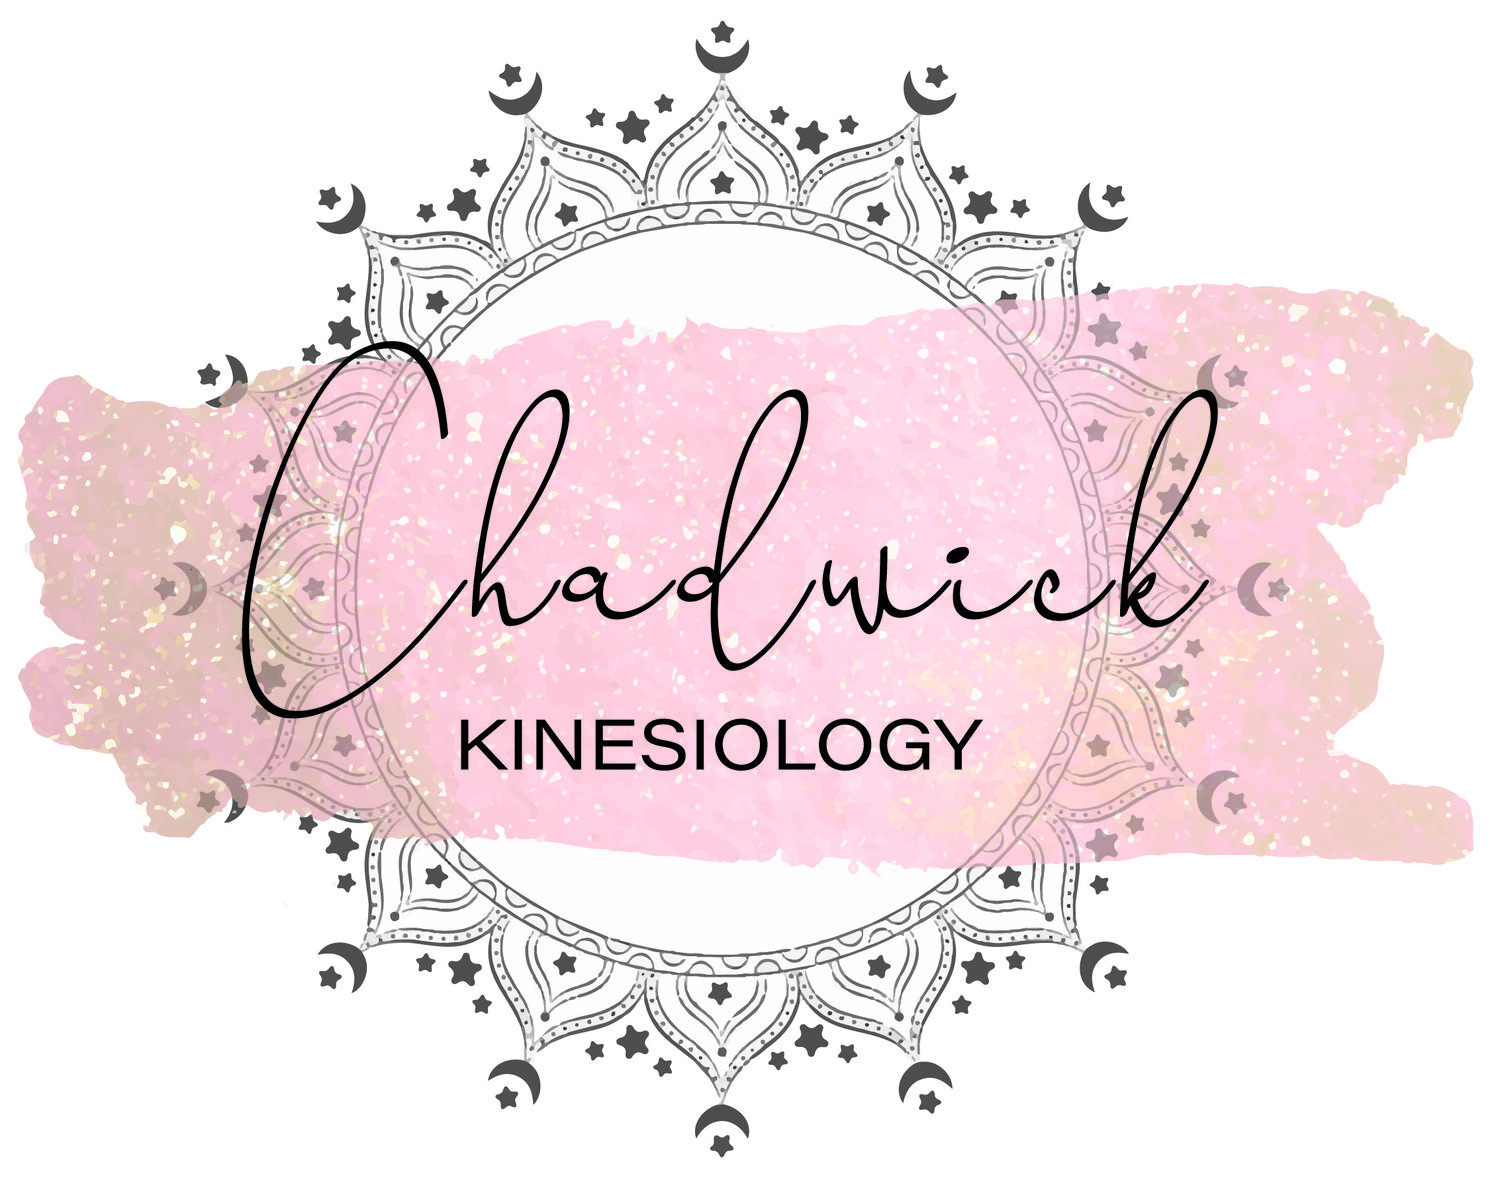 Chadwick Kinesiology